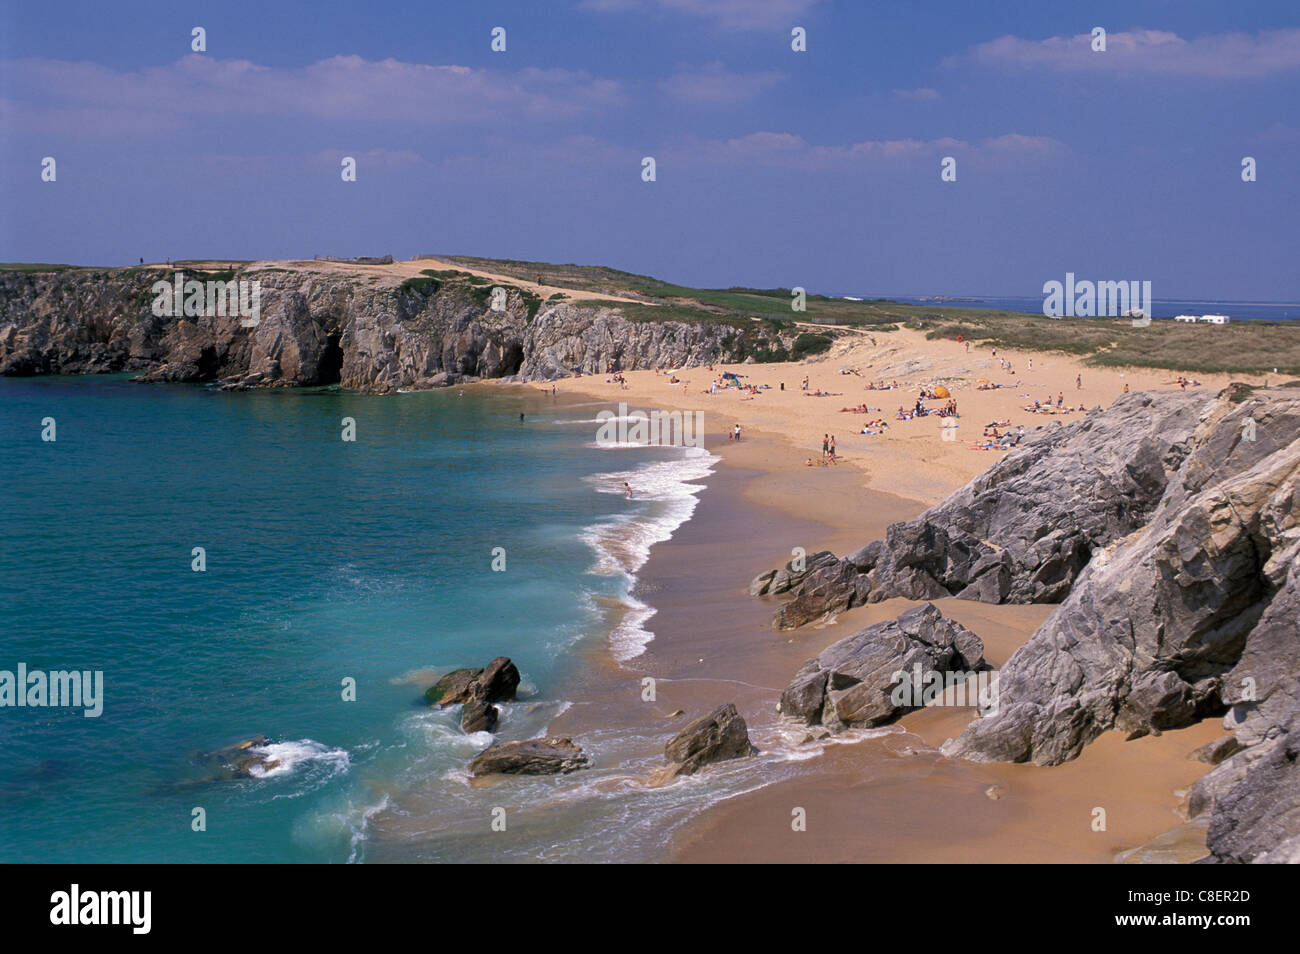 Beach, Cove, Cote Sauvage, Presqui' ile de Quiberon, Brittany, Bretagne, France, Europe, coast Stock Photo